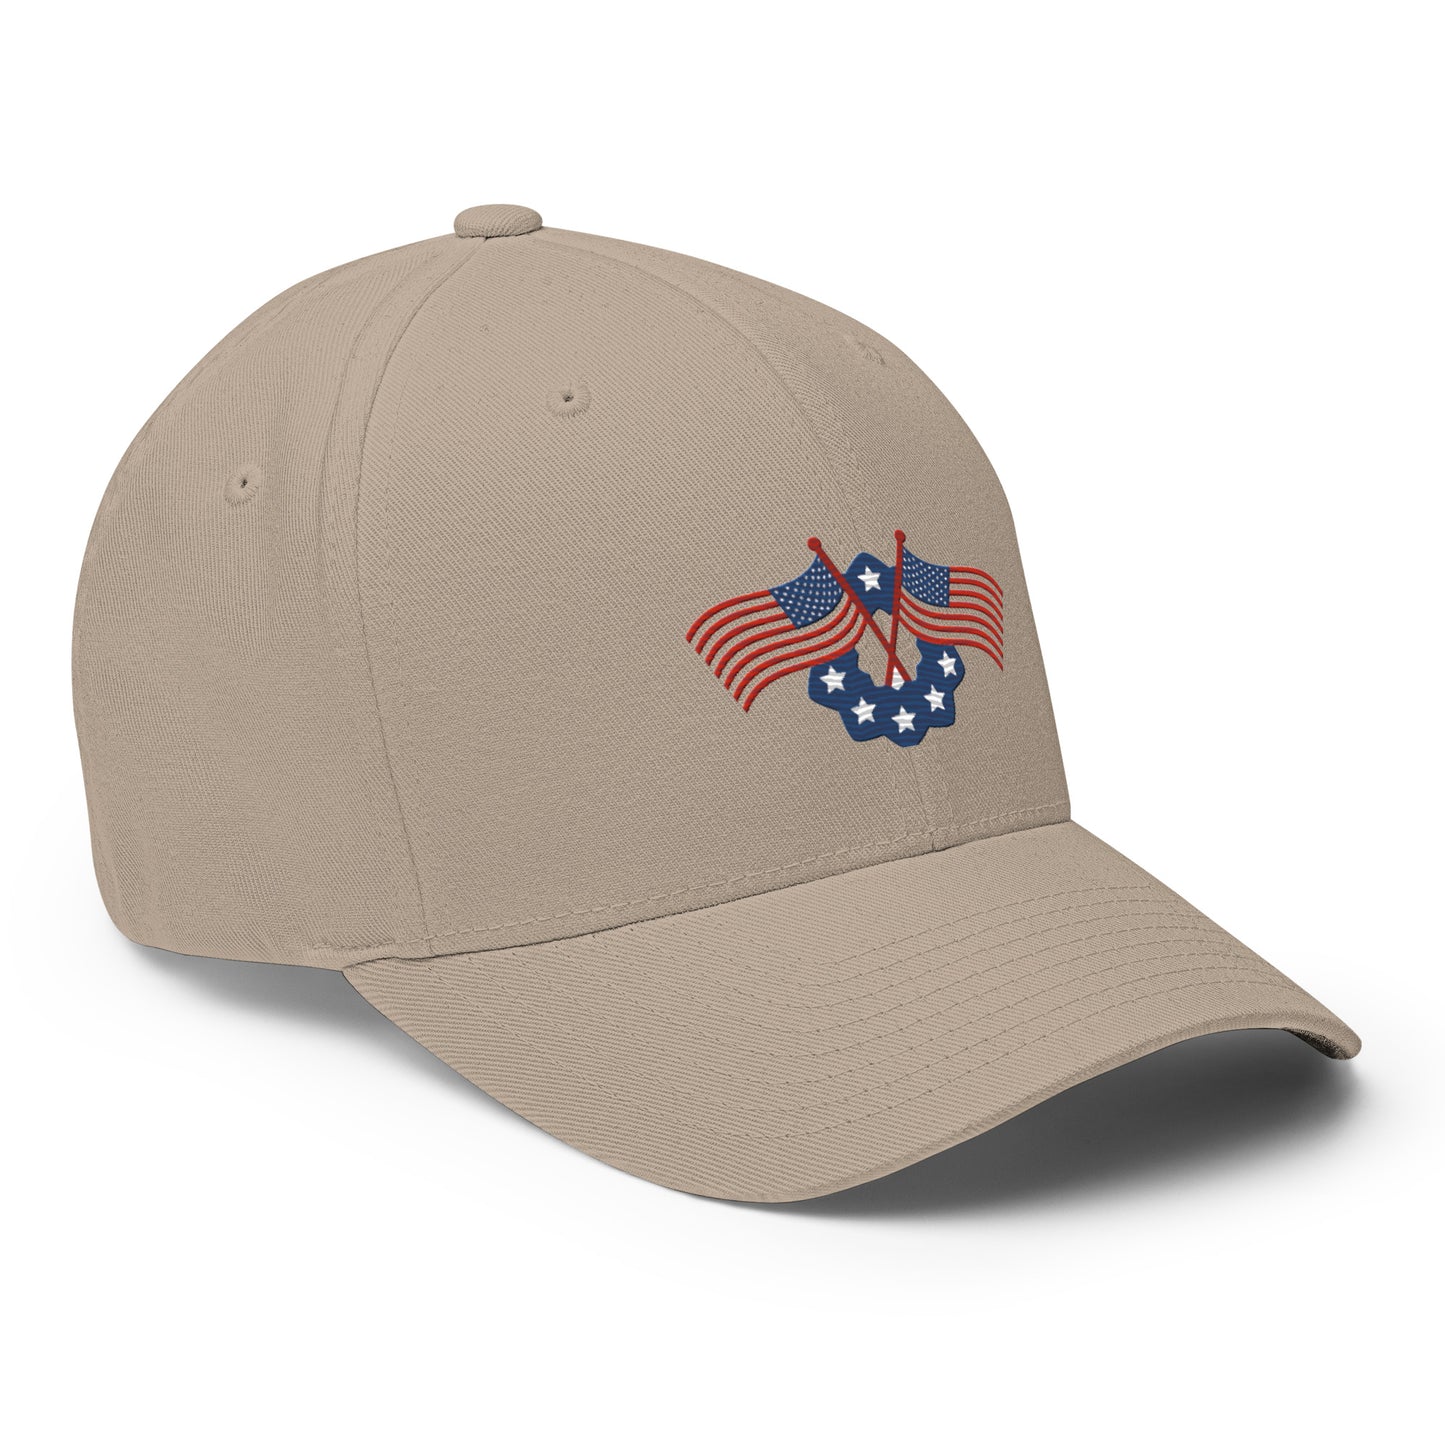 Baseball Cap with Memorial Day Symbol